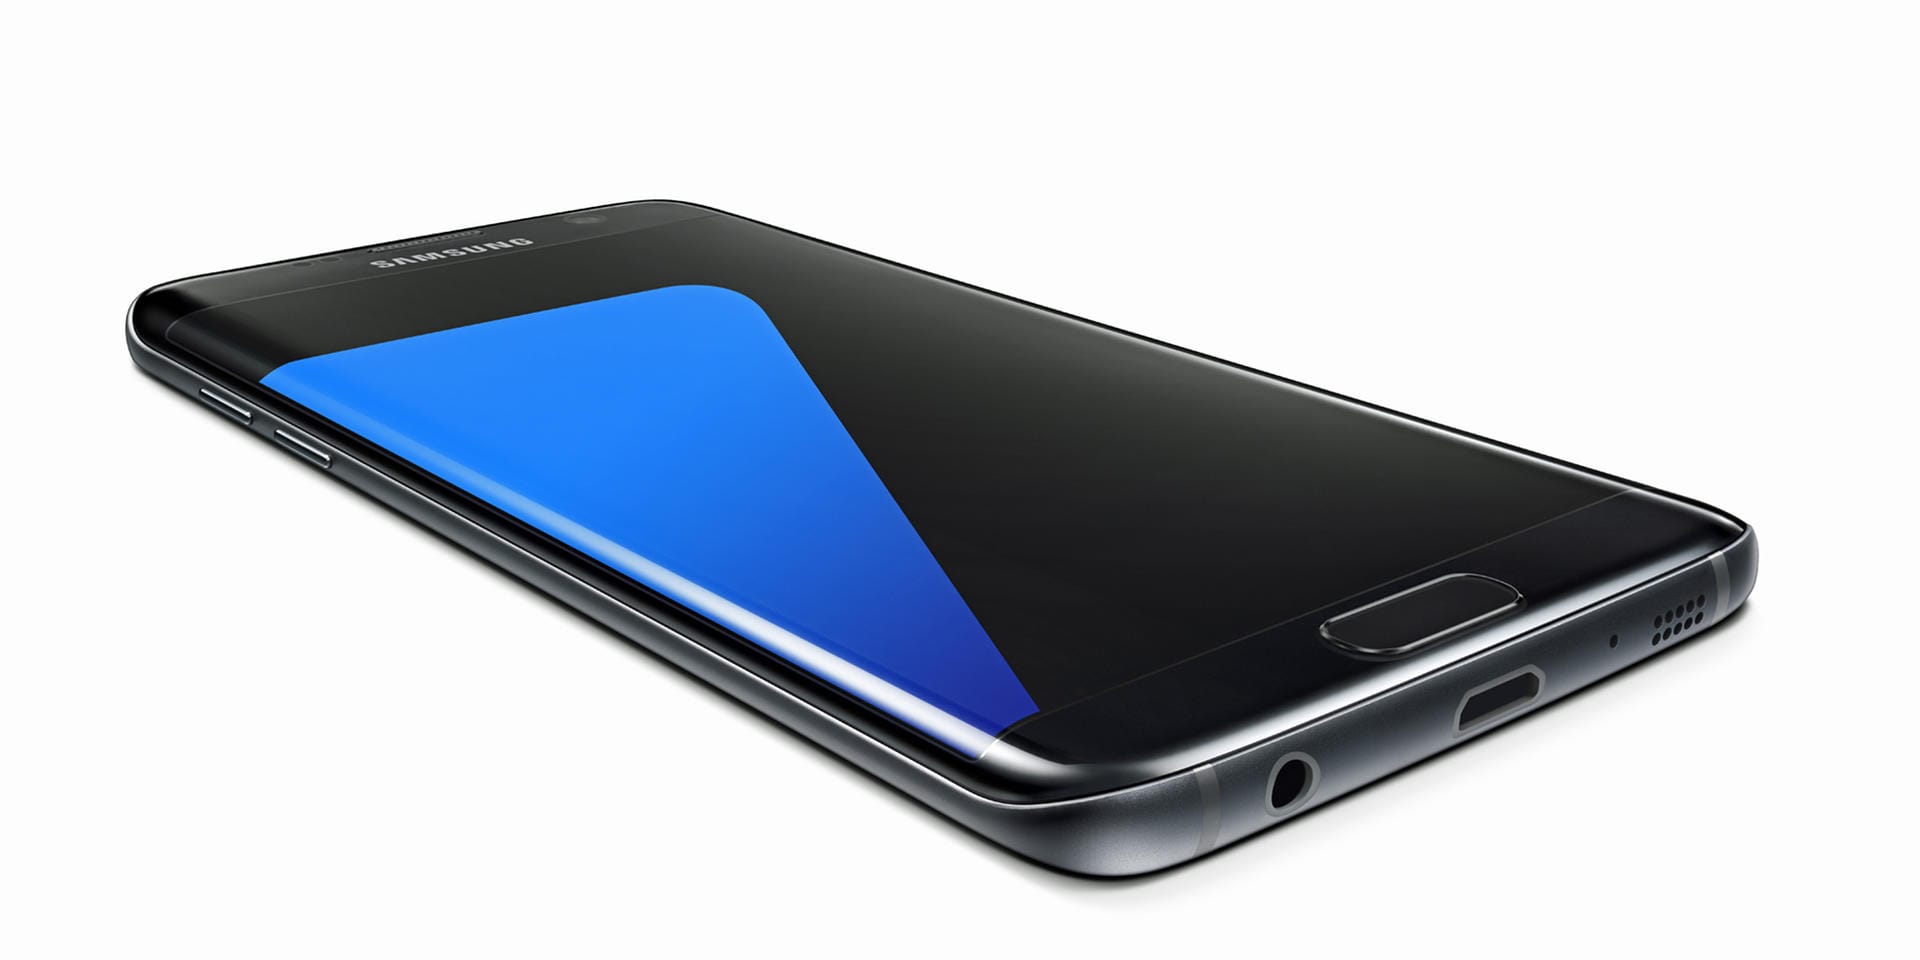 Das Galaxy S7 Edge ist mit seinem 5,5-Zoll-Display schon eher ein Phablet. Die Bedienung braucht eher beide Hände.